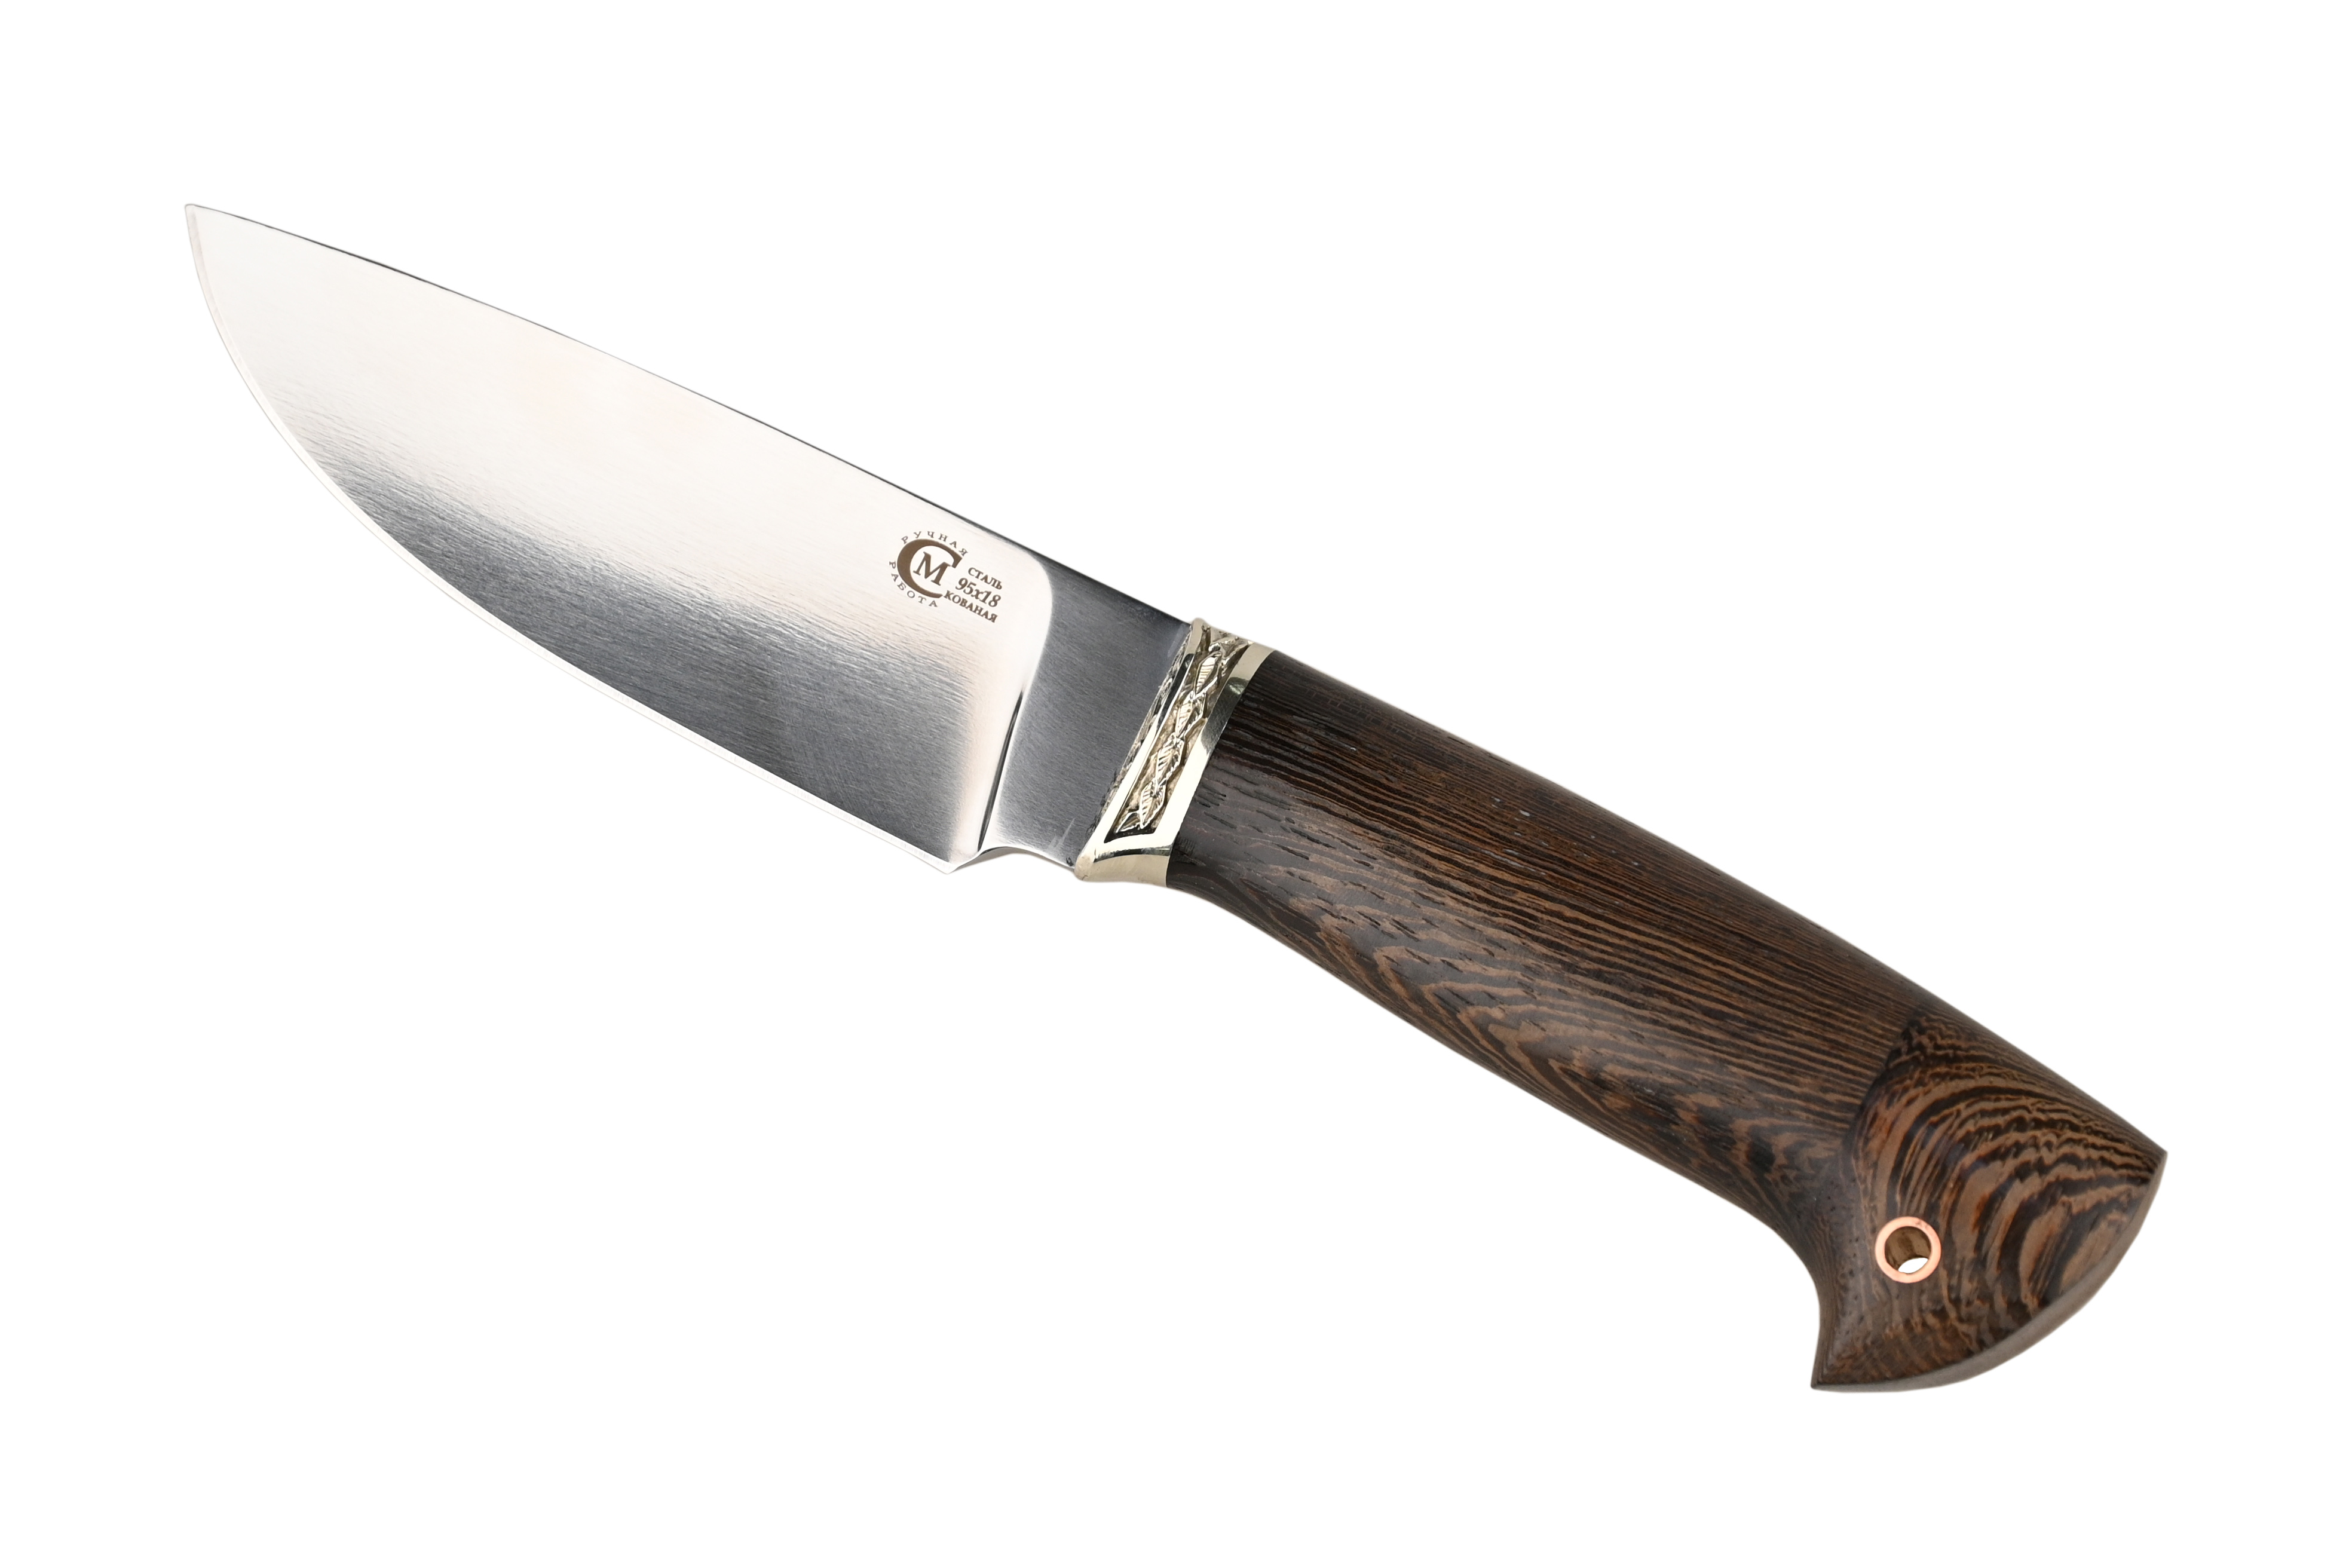 Нож ИП Семин Сокол кованая сталь 95х18 венге литье - фото 1